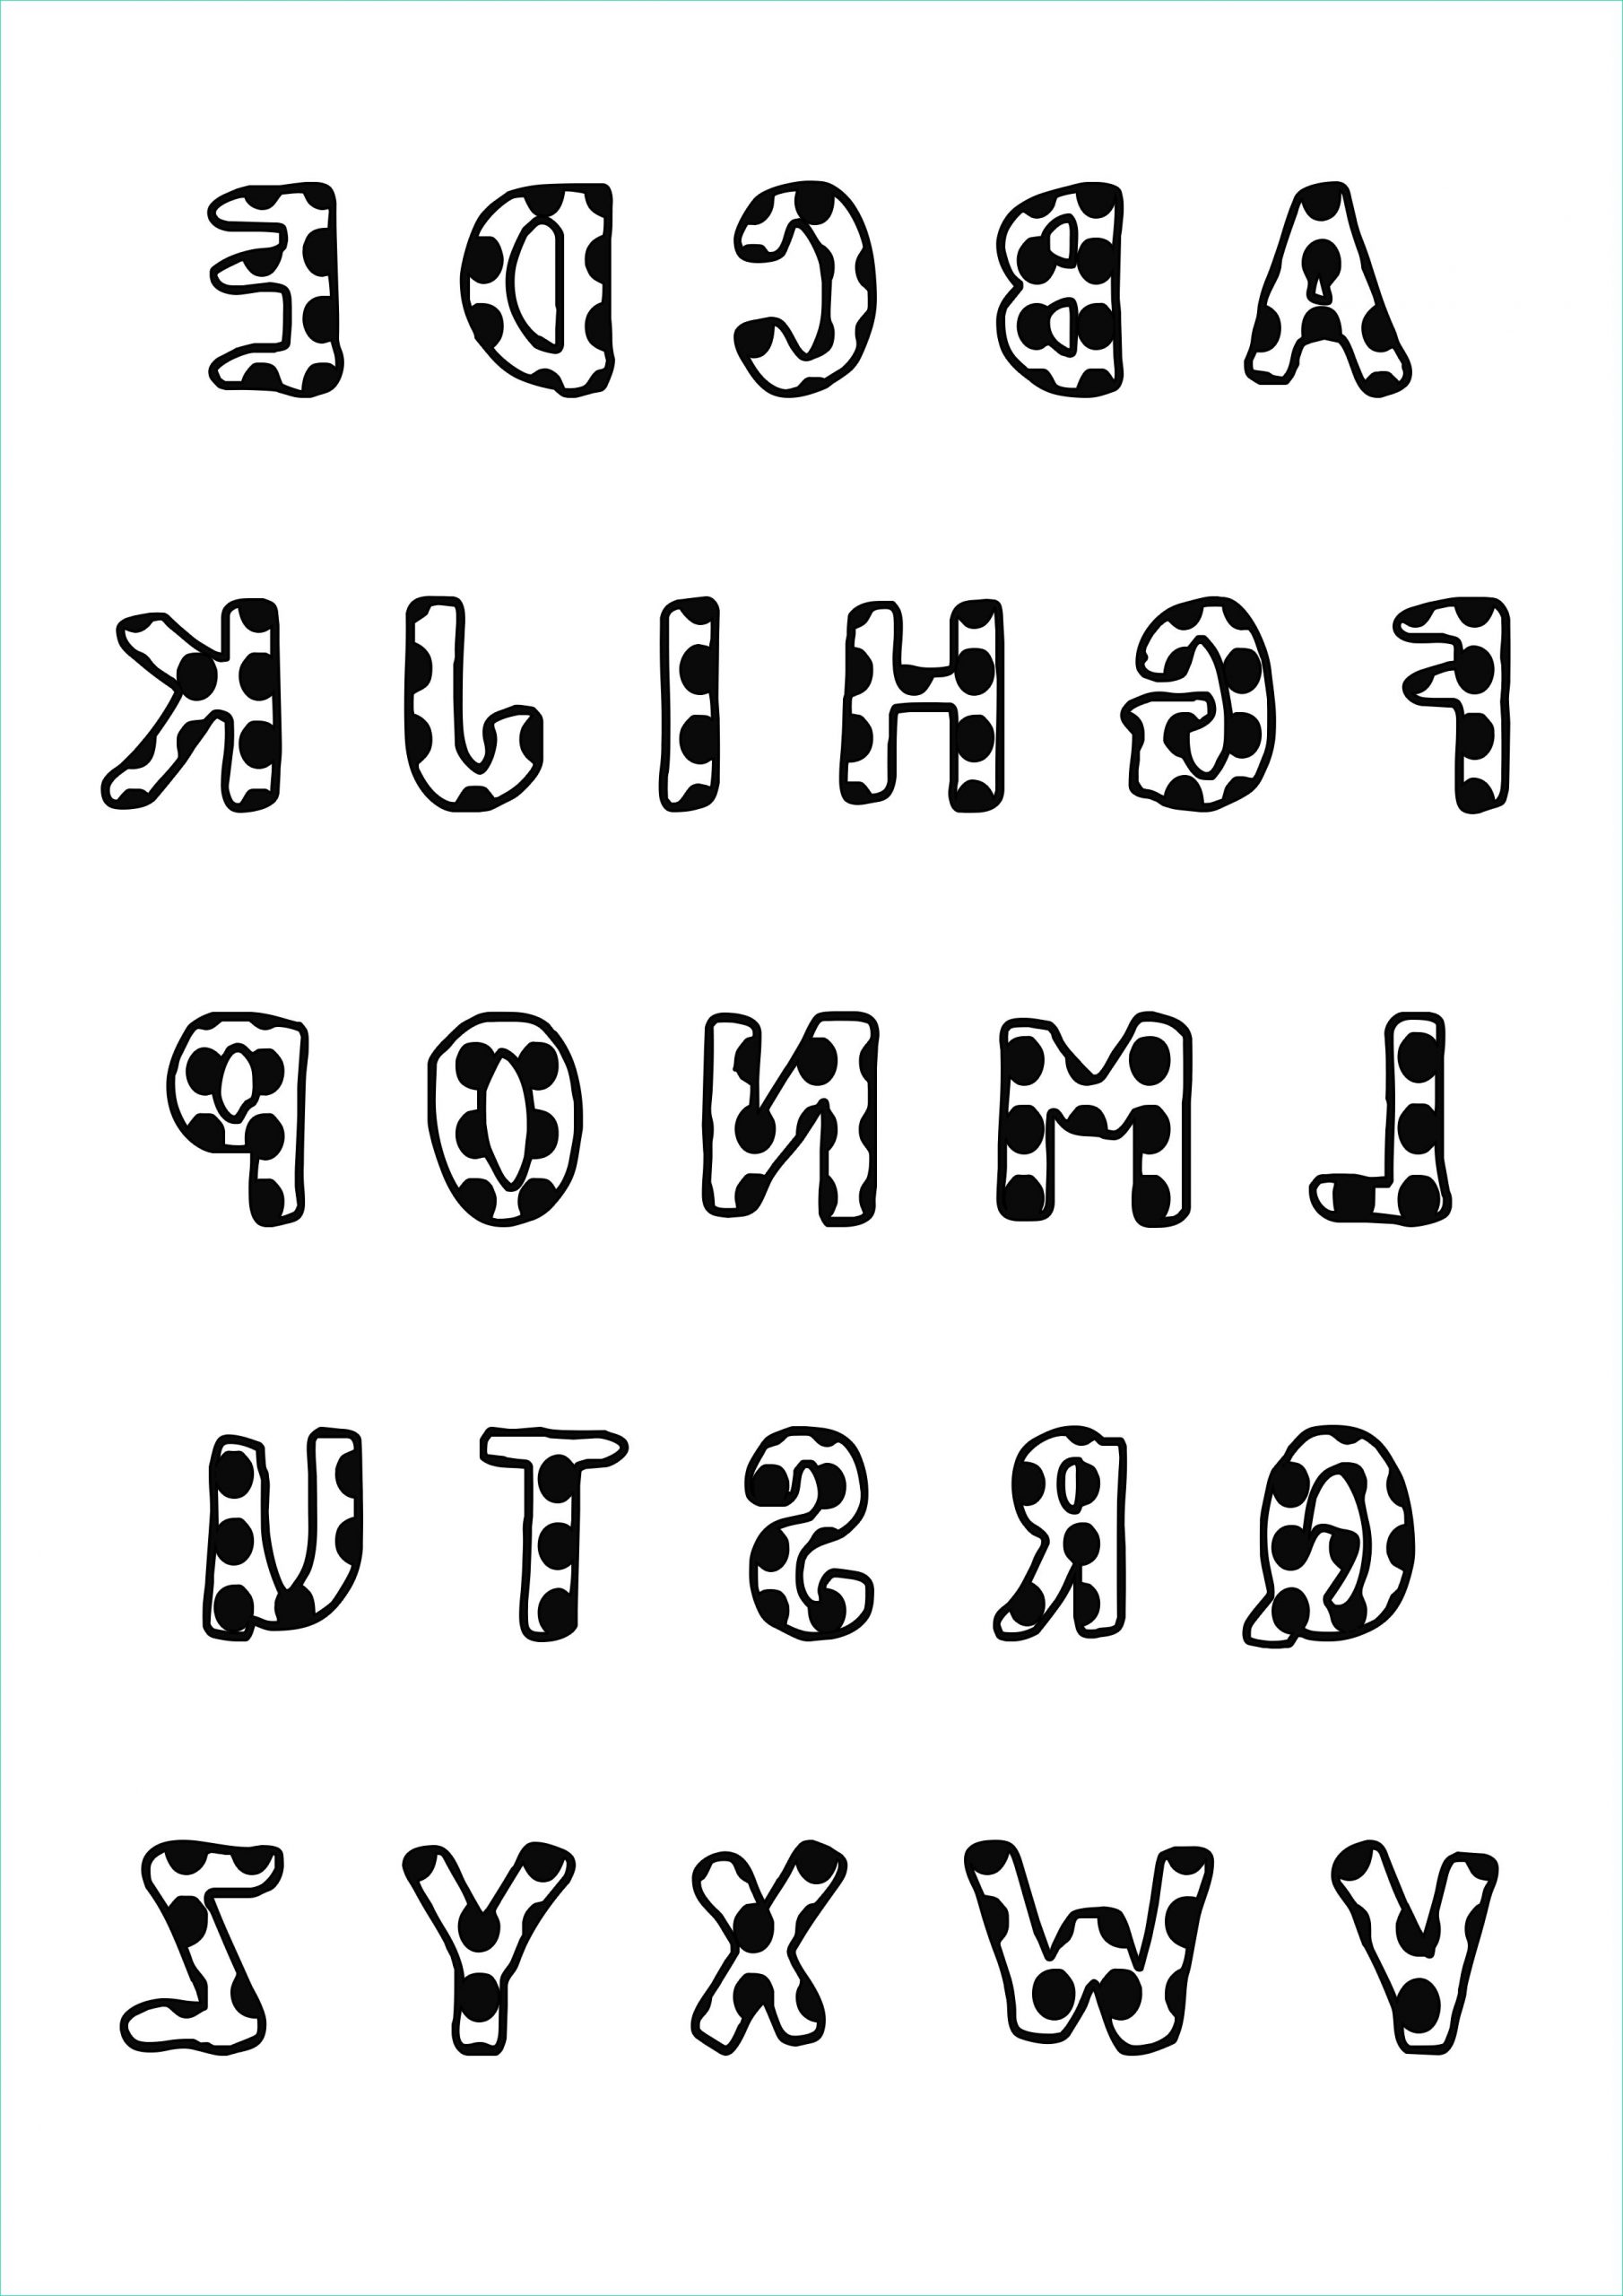 Coloriage Lettres Alphabet Unique Stock Simple Alphabet 9 Alphabet Coloring Pages for Kids to